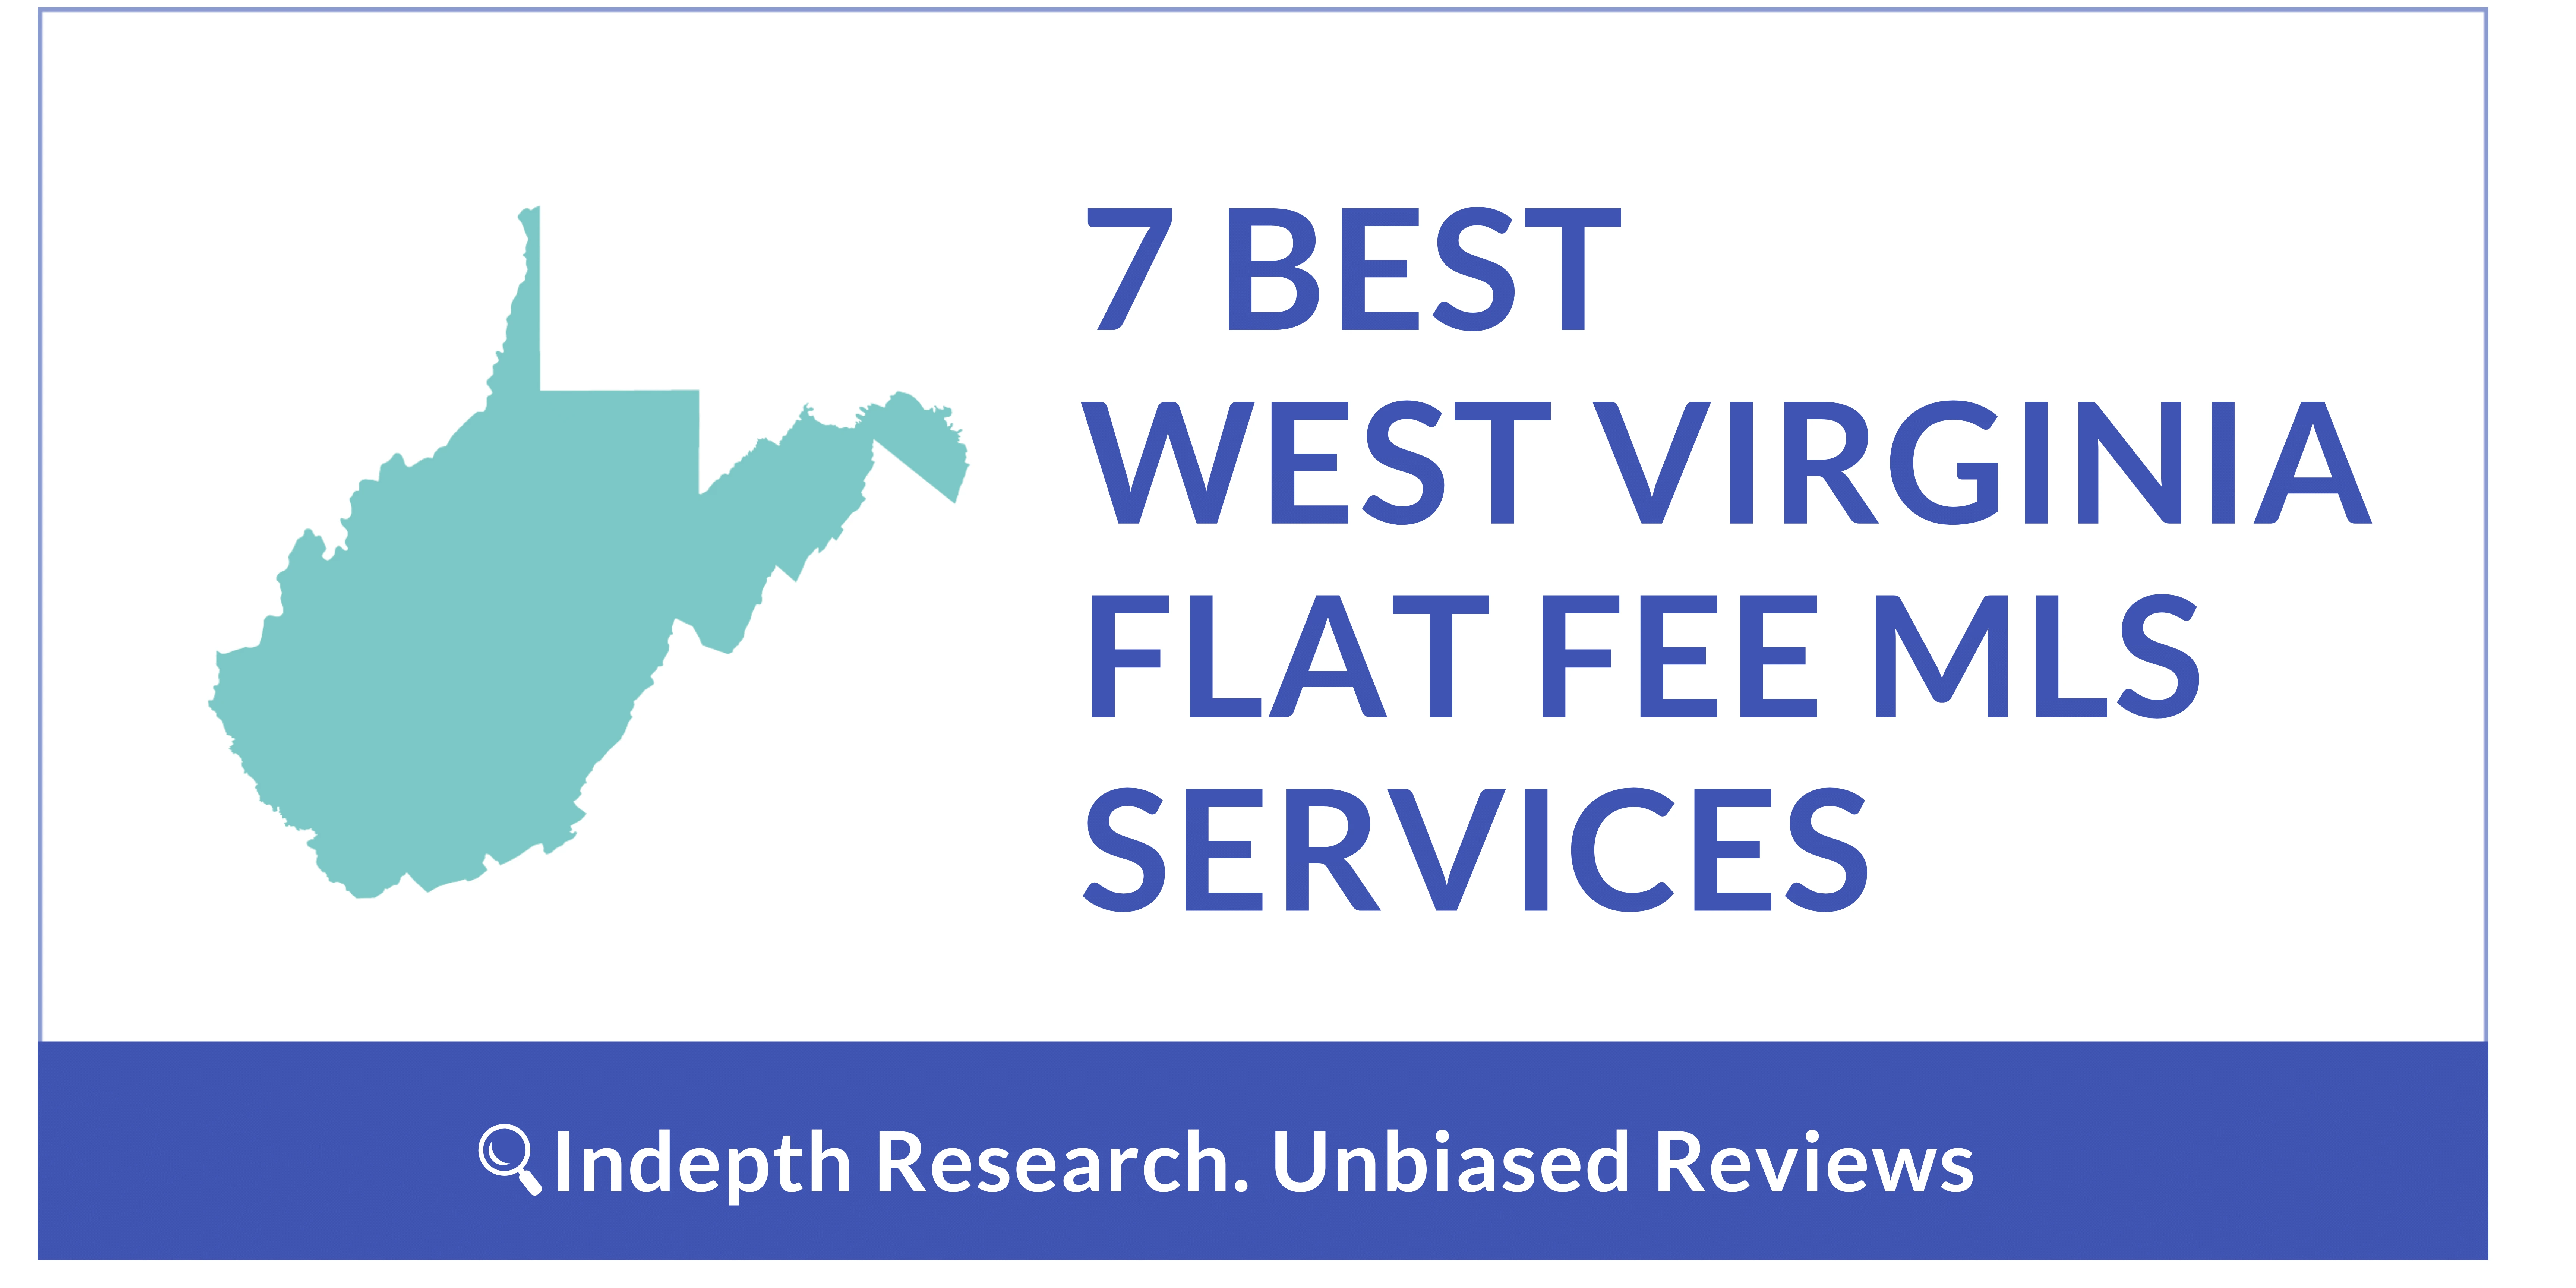 7 Best Flat Fee MLS Companies In West Virginia